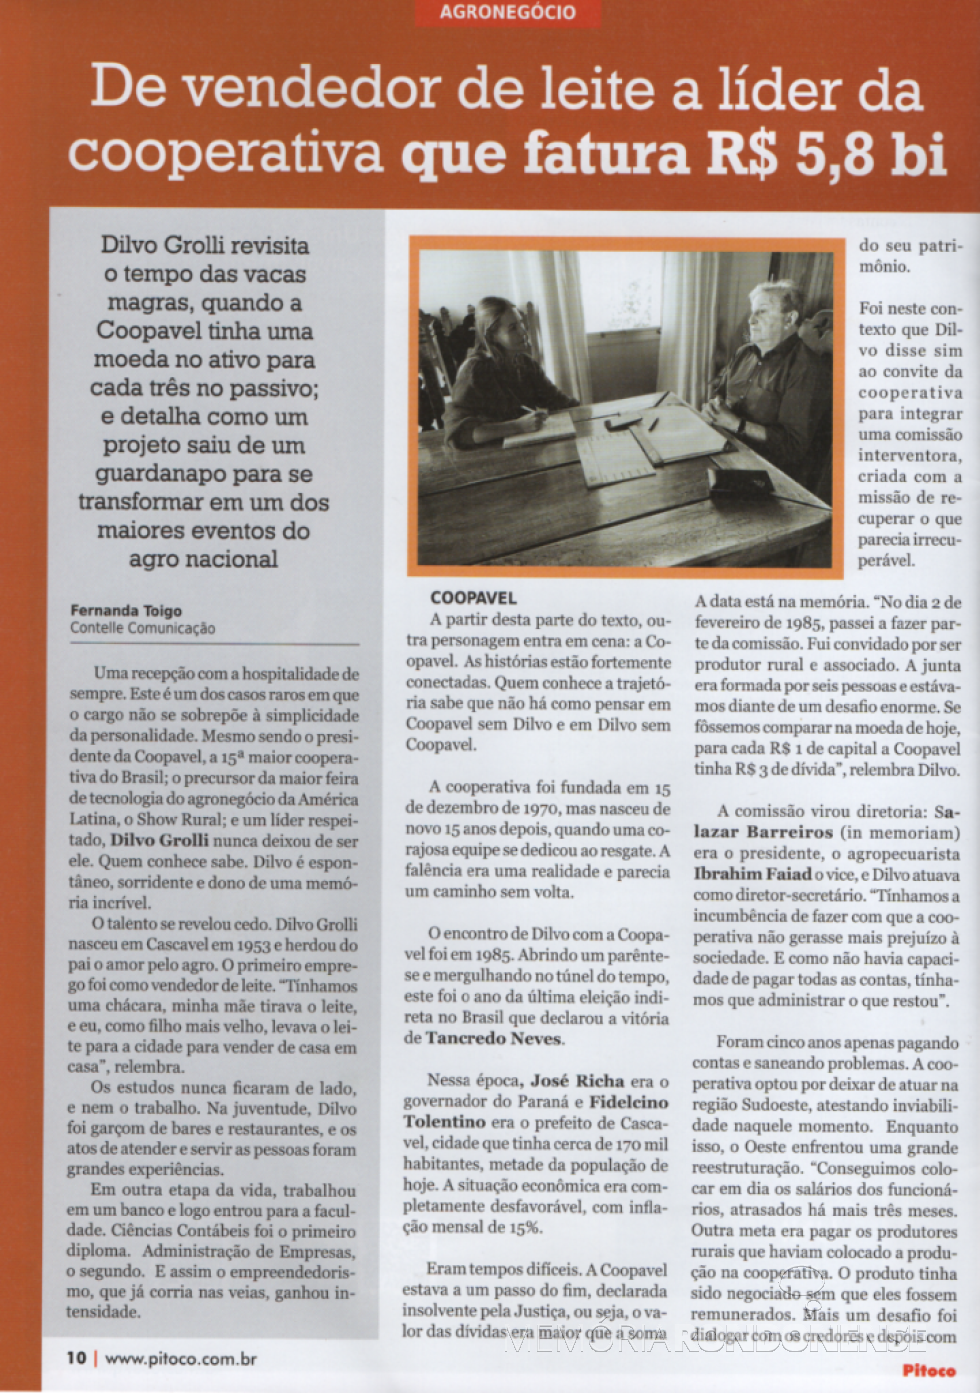 || Recorte (1) da matéria sobre o líder cooperativista Dilvo Grolli, na revista 